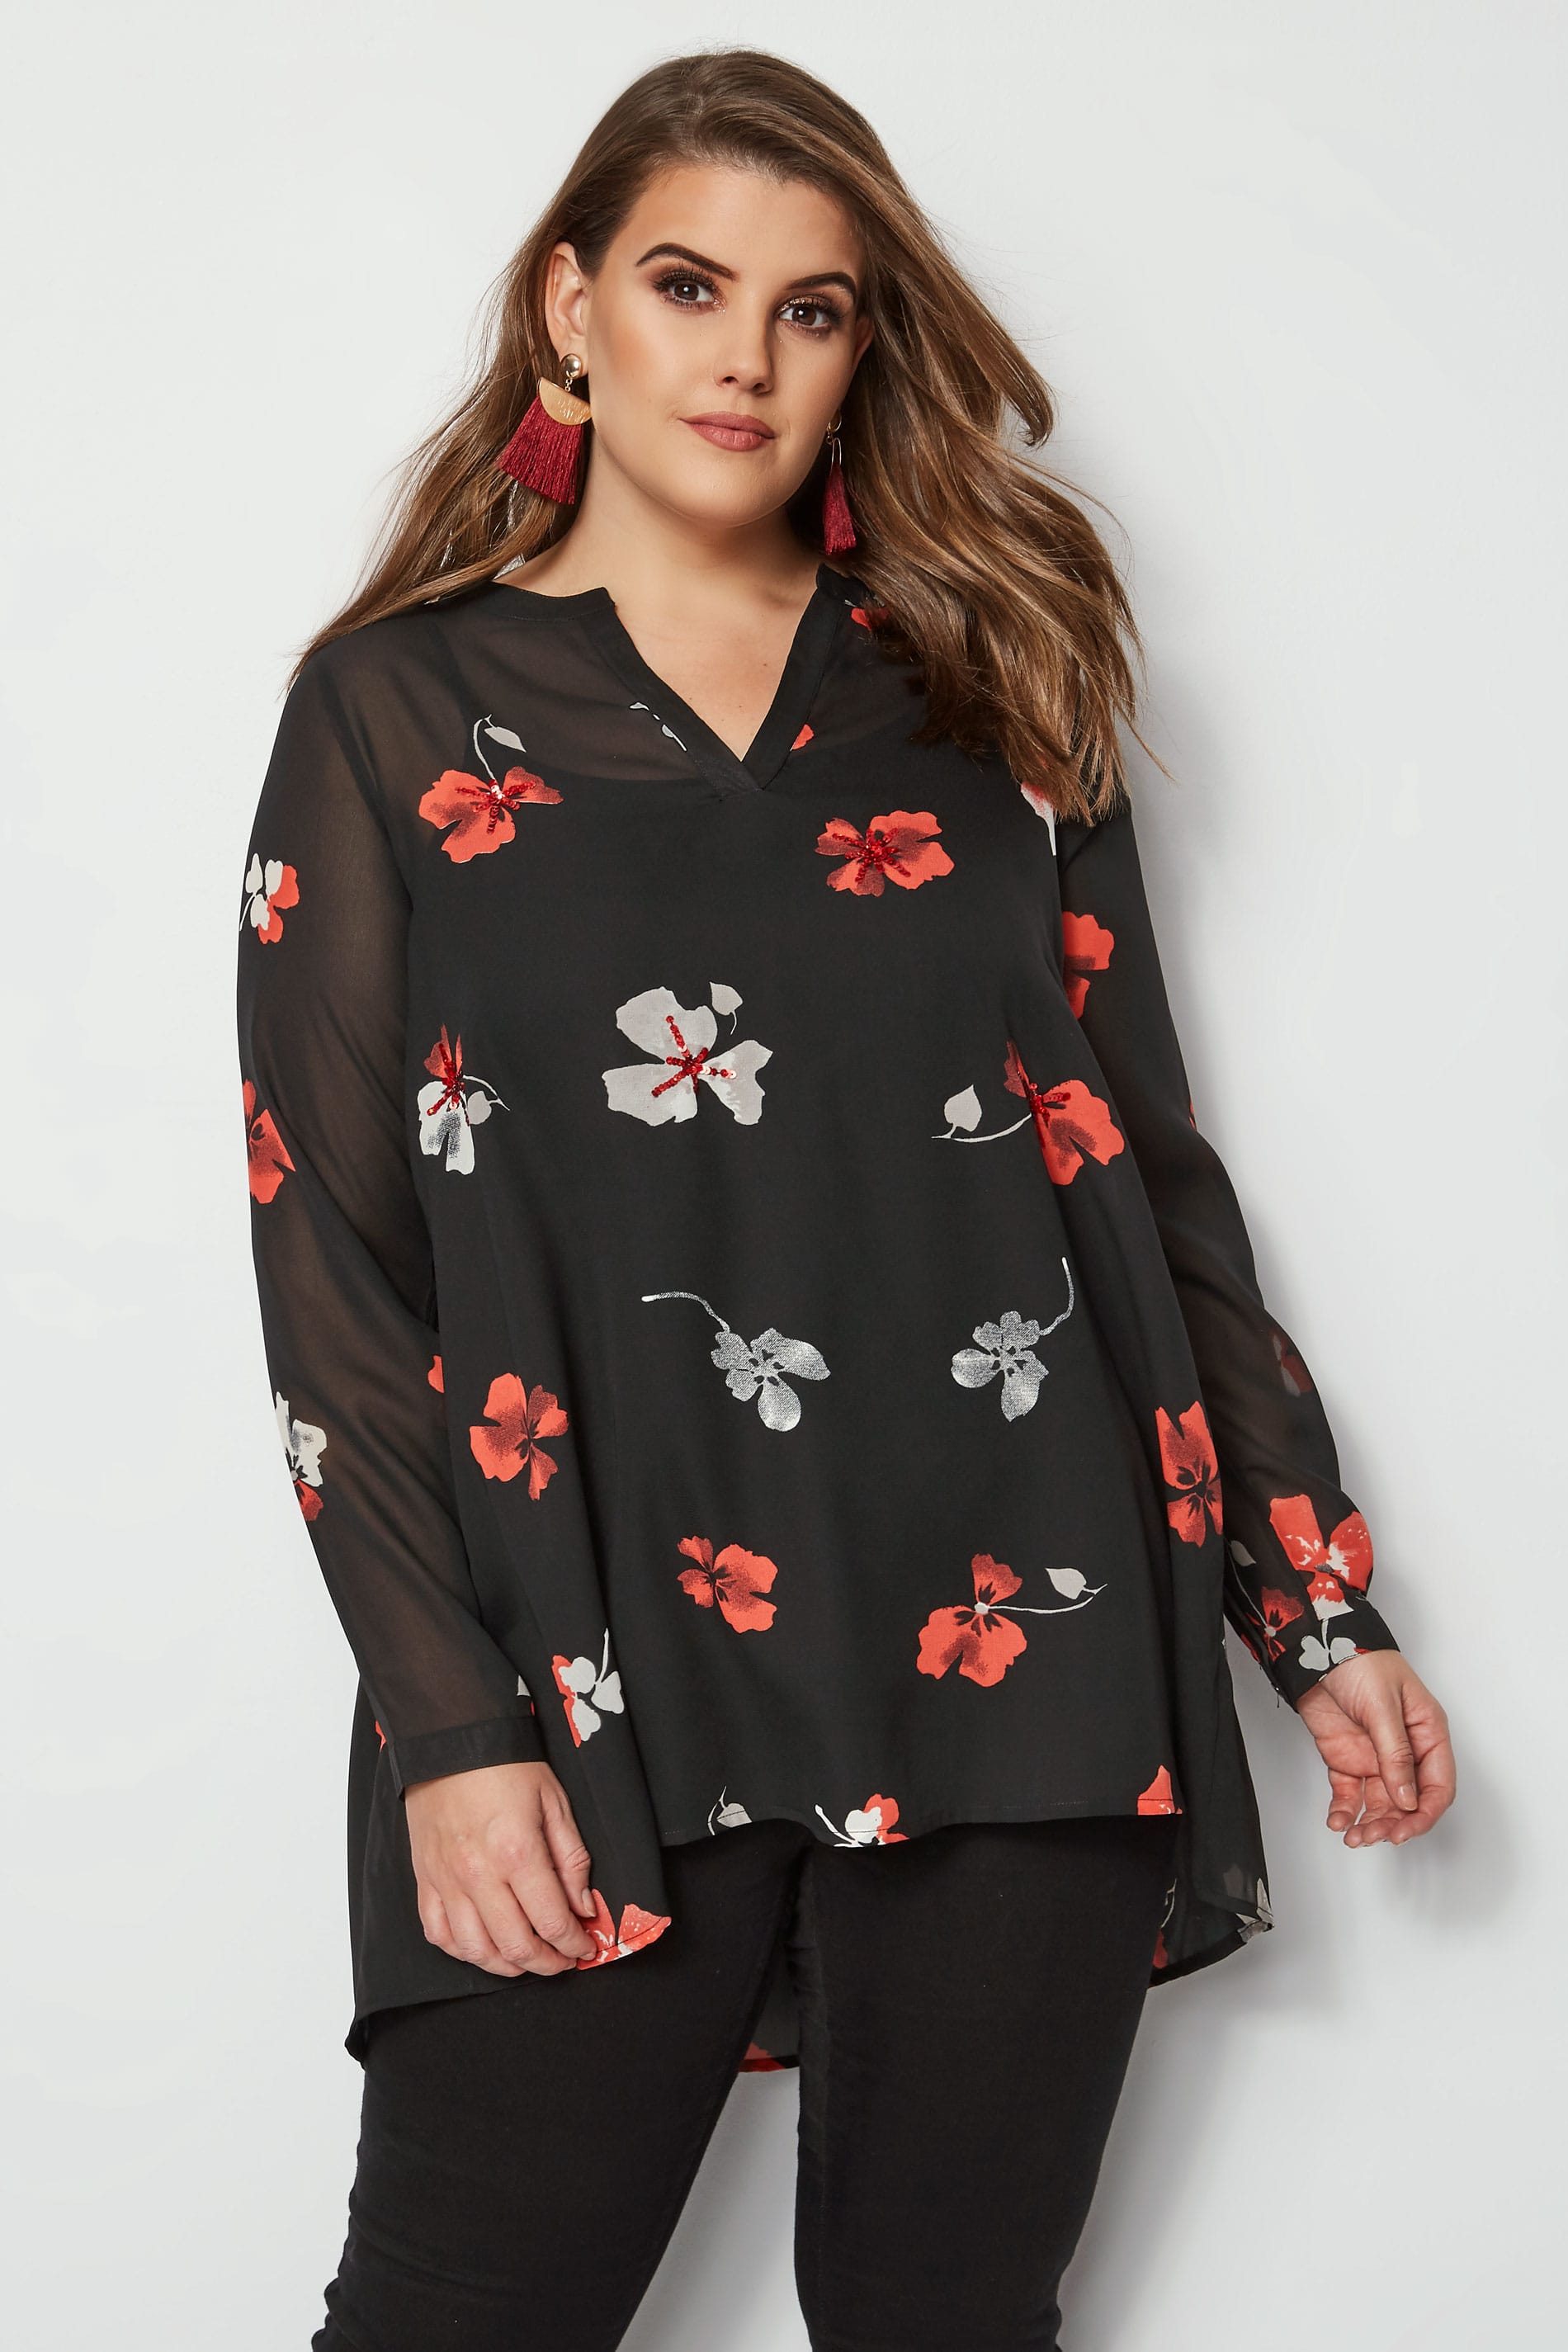 2019 floral print plus size button up shirt